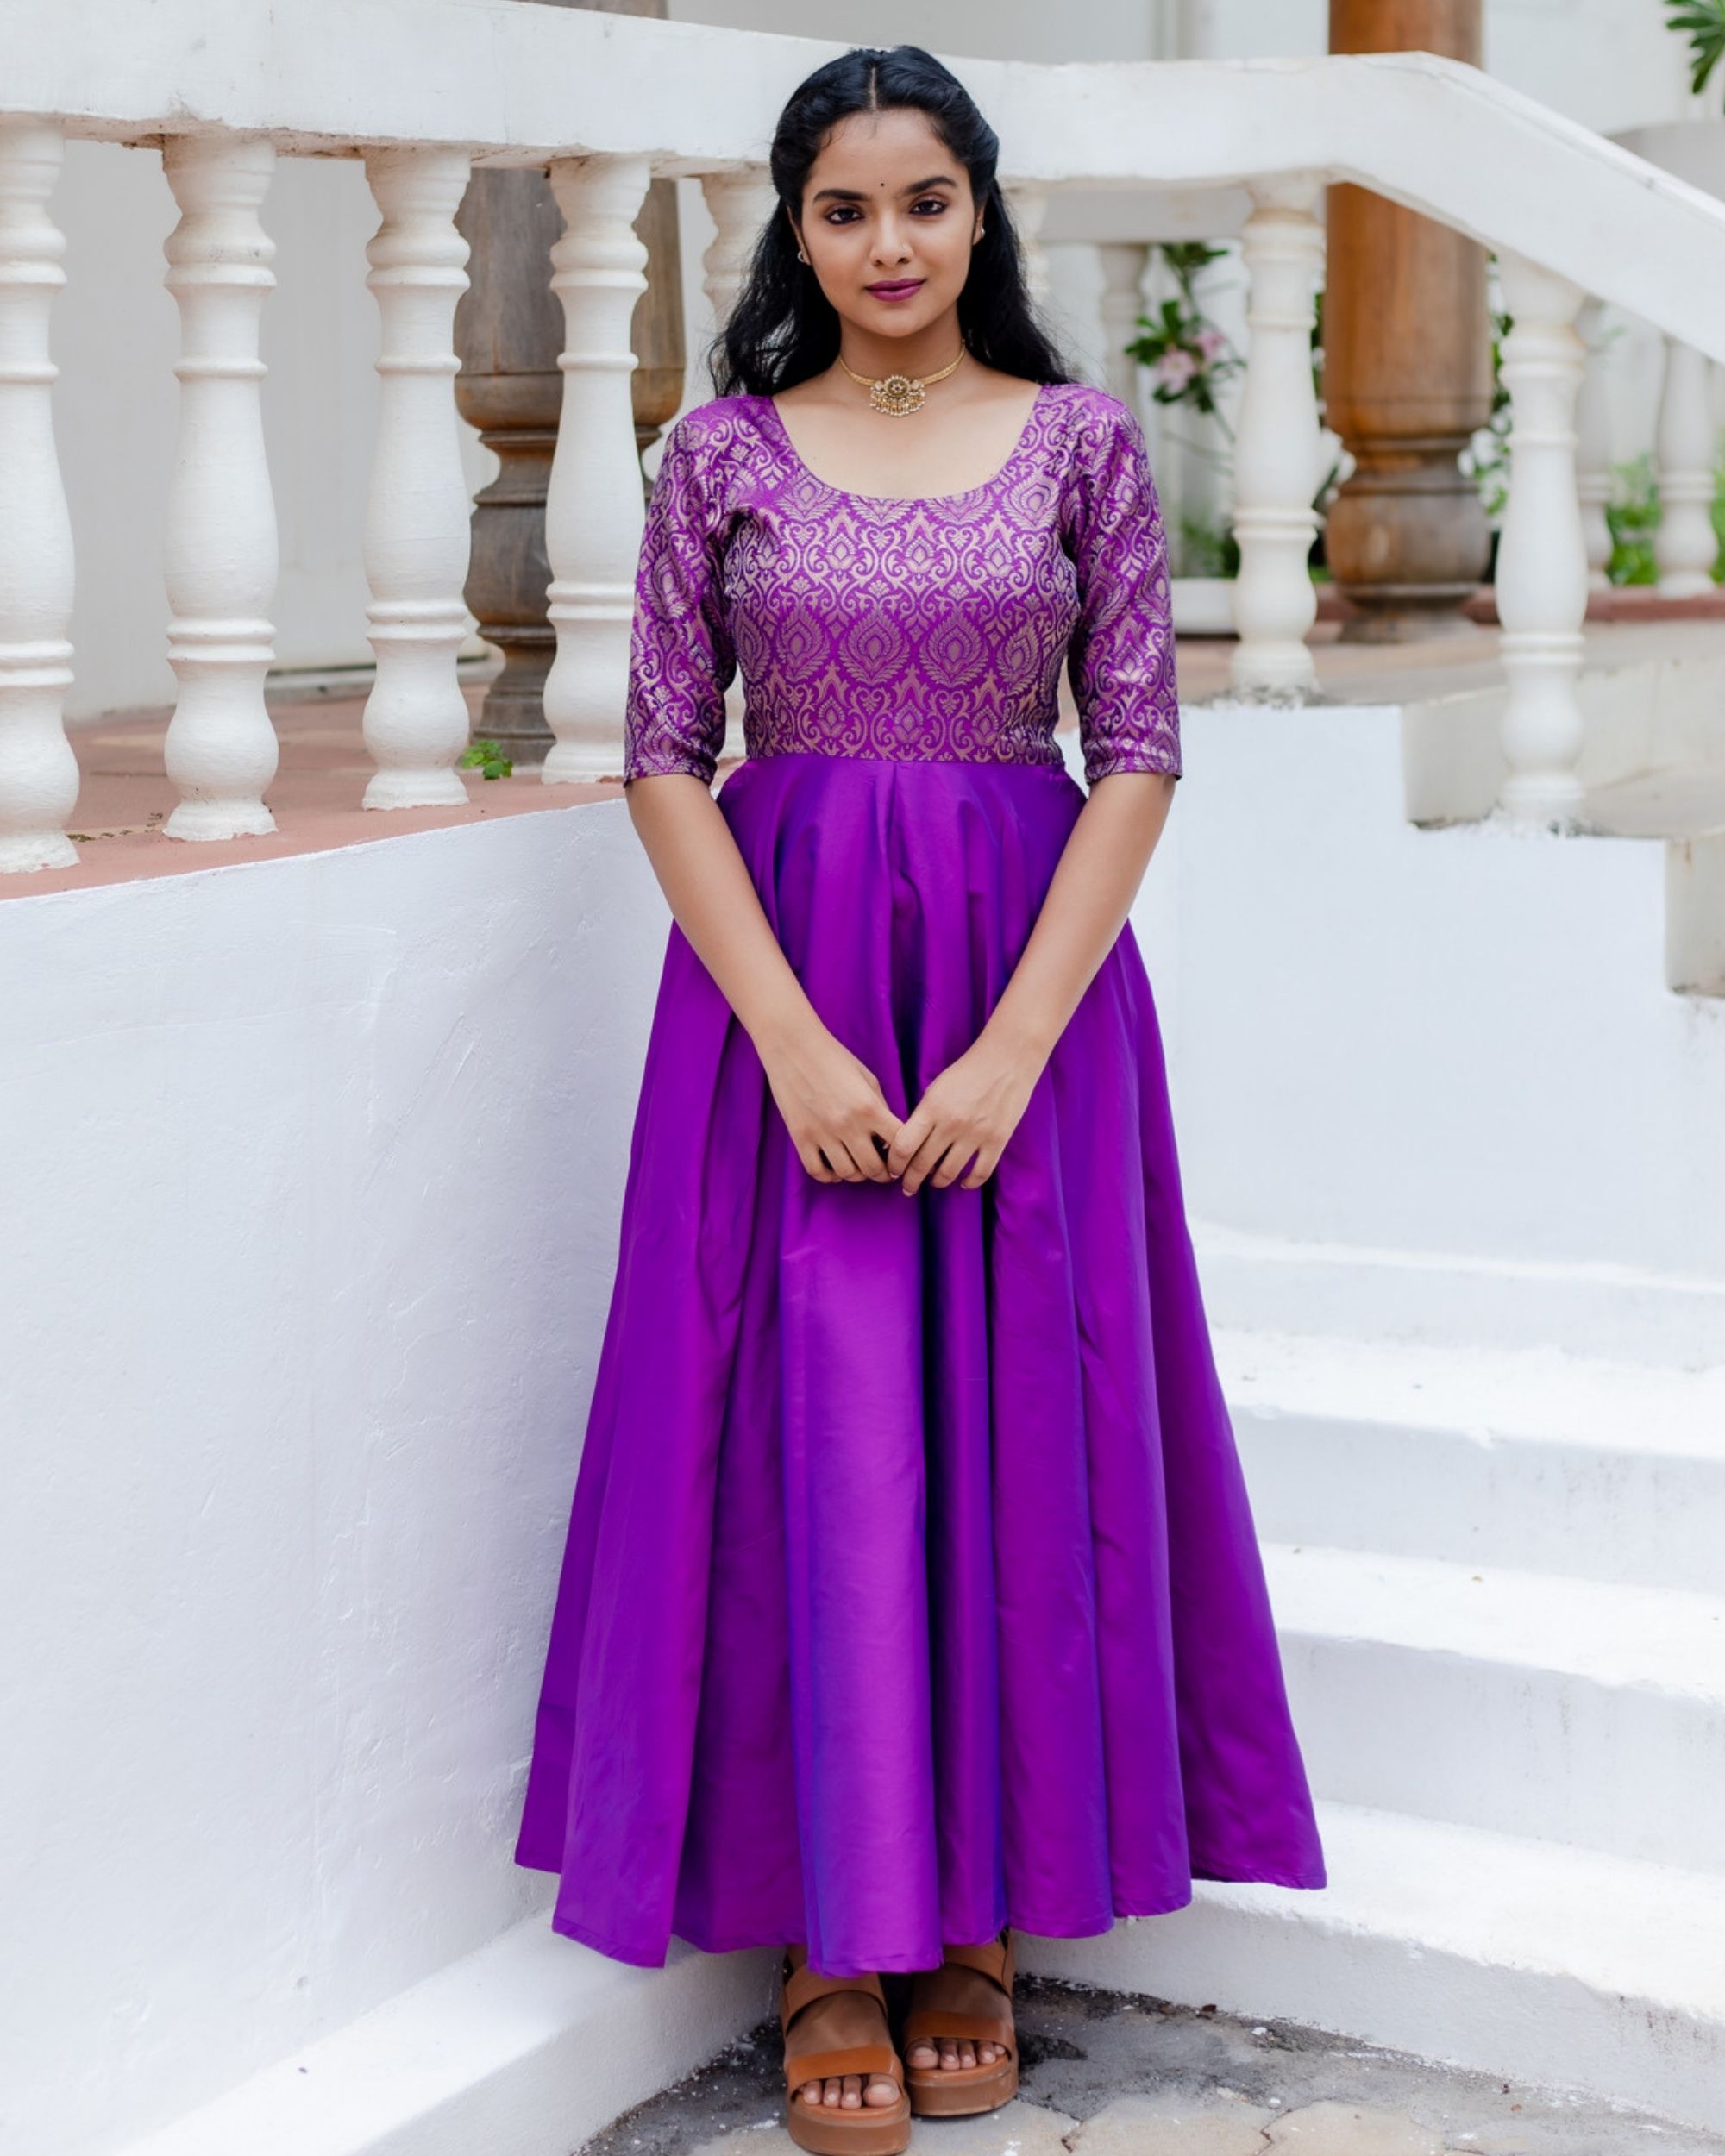 Violet silk brocade flared dress